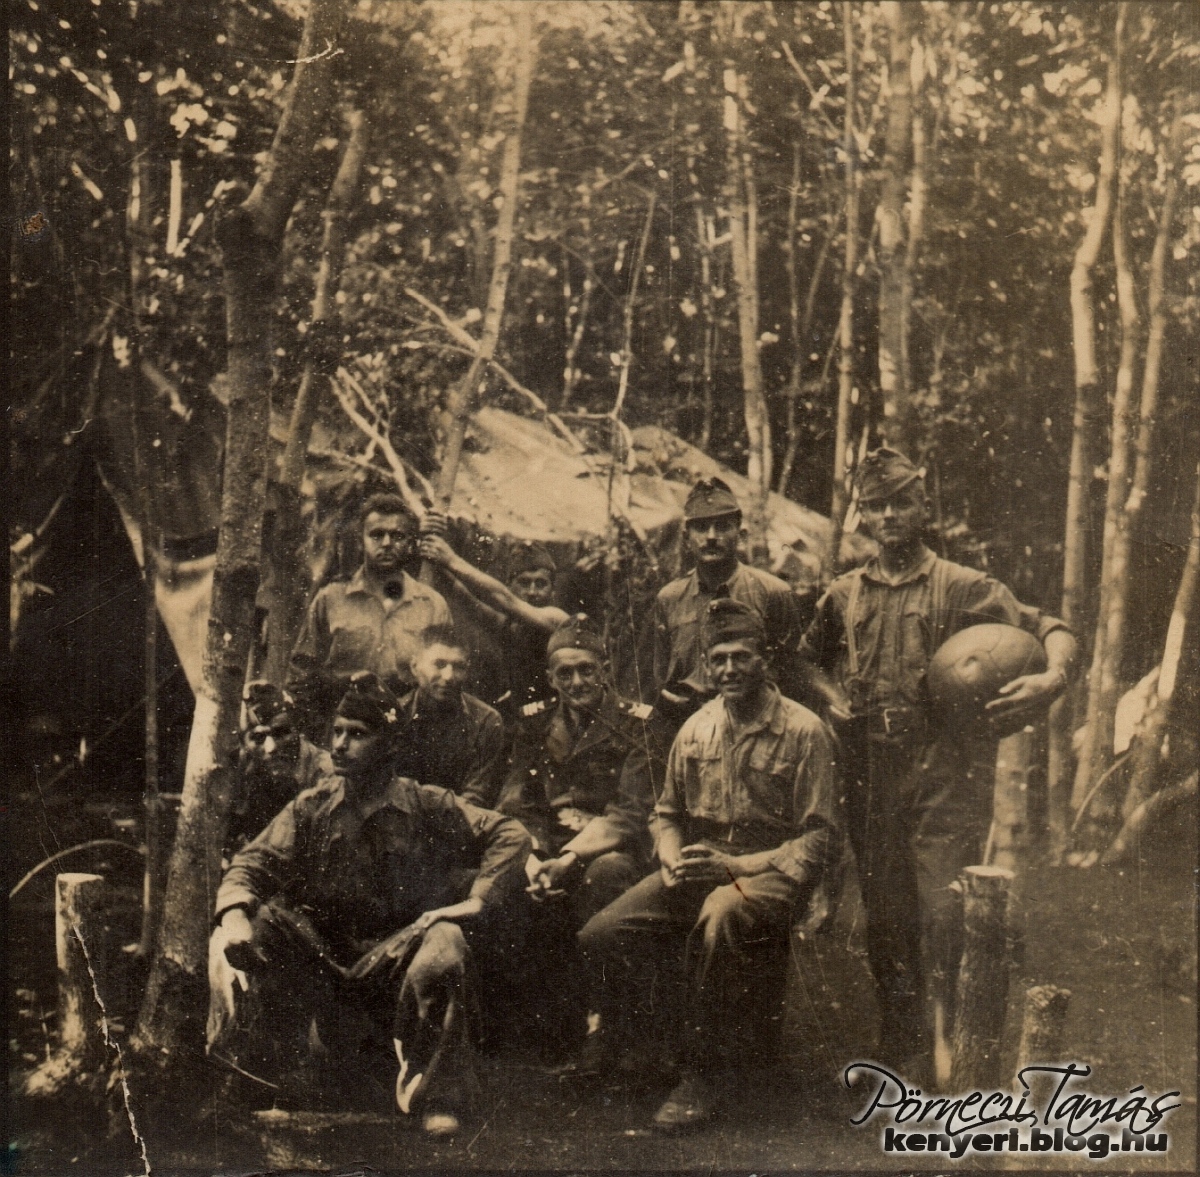 Horváth Imre katonaideje alatt készült ez a fotó, ahol katonatársaival és idős parancsnokukkal egy rejtett sátor előtt pózolnak a fotósnak. Imre kezében egy hatalmas labdát tart. A fotó 1942-ben készült. (Családi fotóalbumomból)